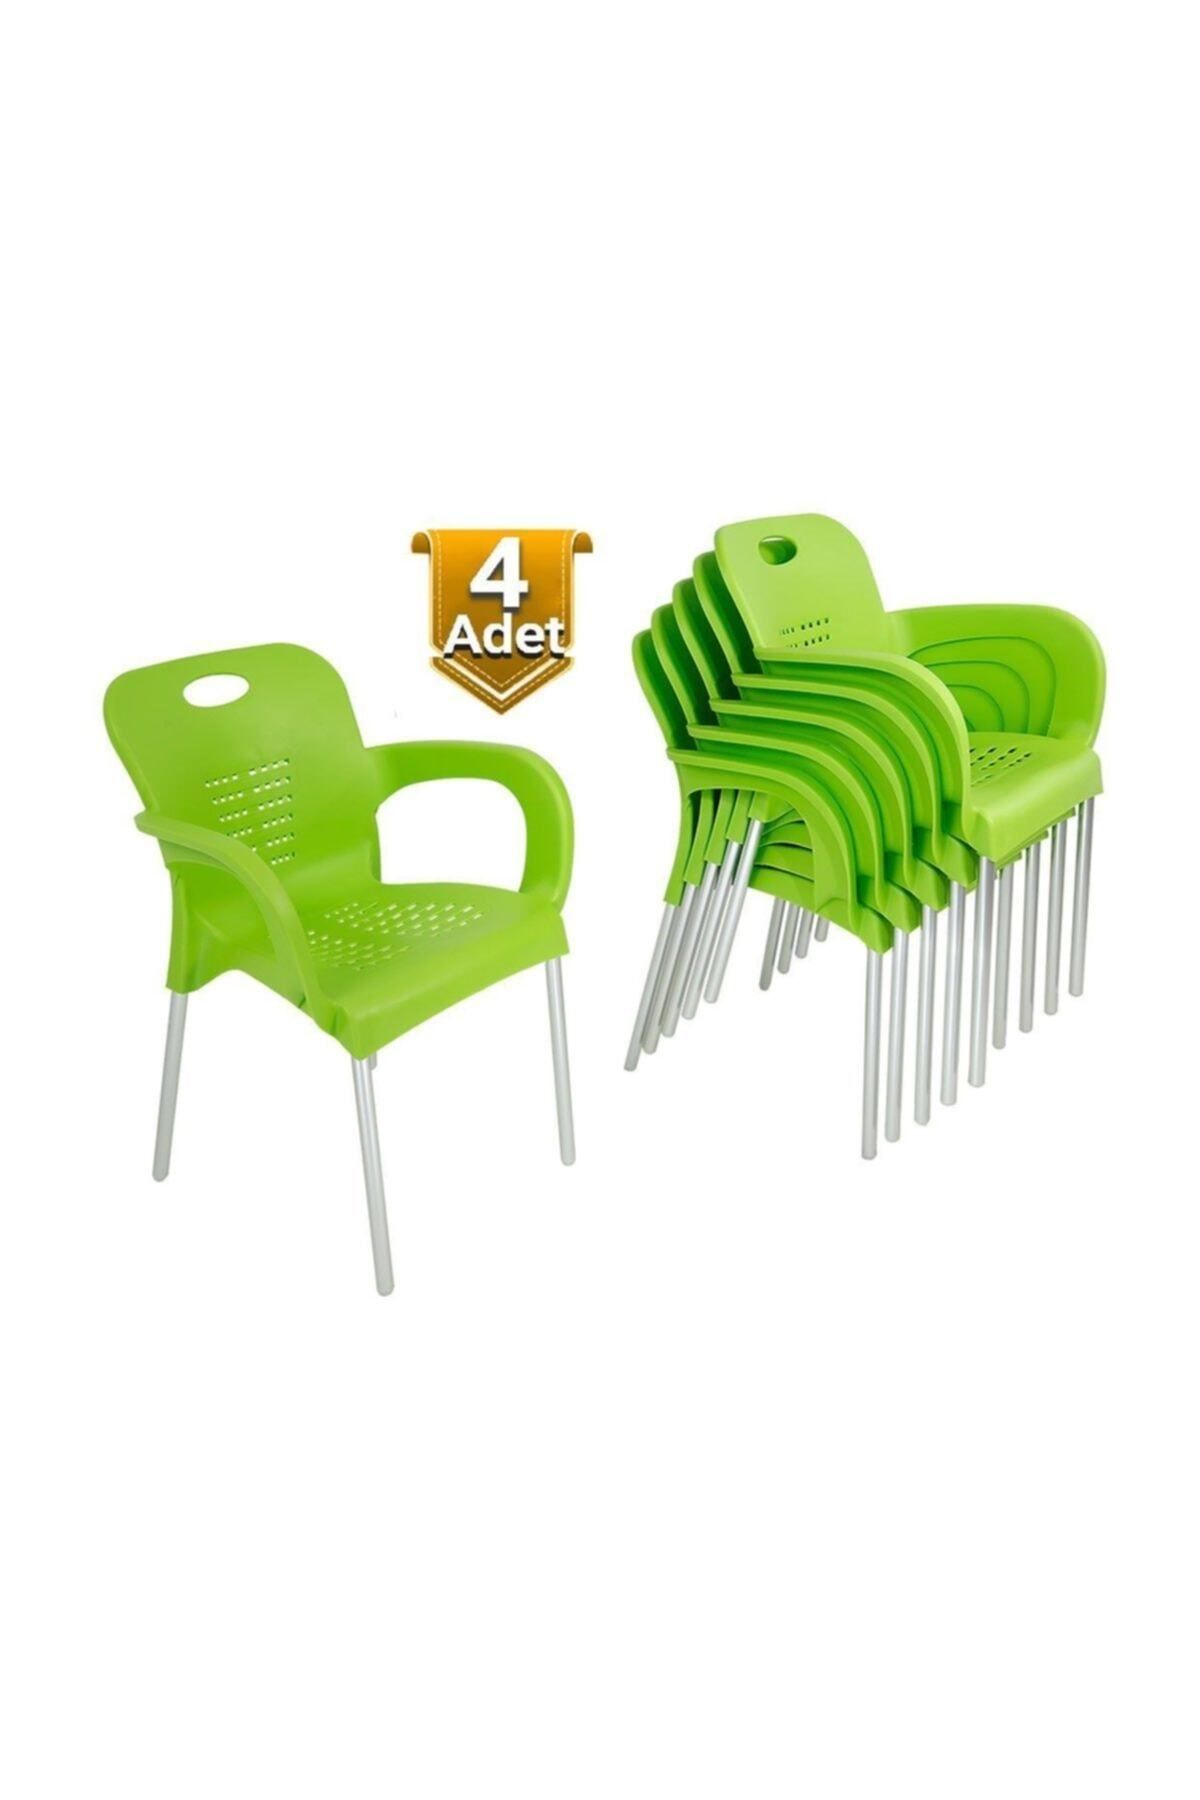 Özel Yapım 4 Adet Çok Sağlam Plastik Sandalye - Uzun Ömürlü - Günün Fırsatı - 6 Farklı Renk Seçeneği